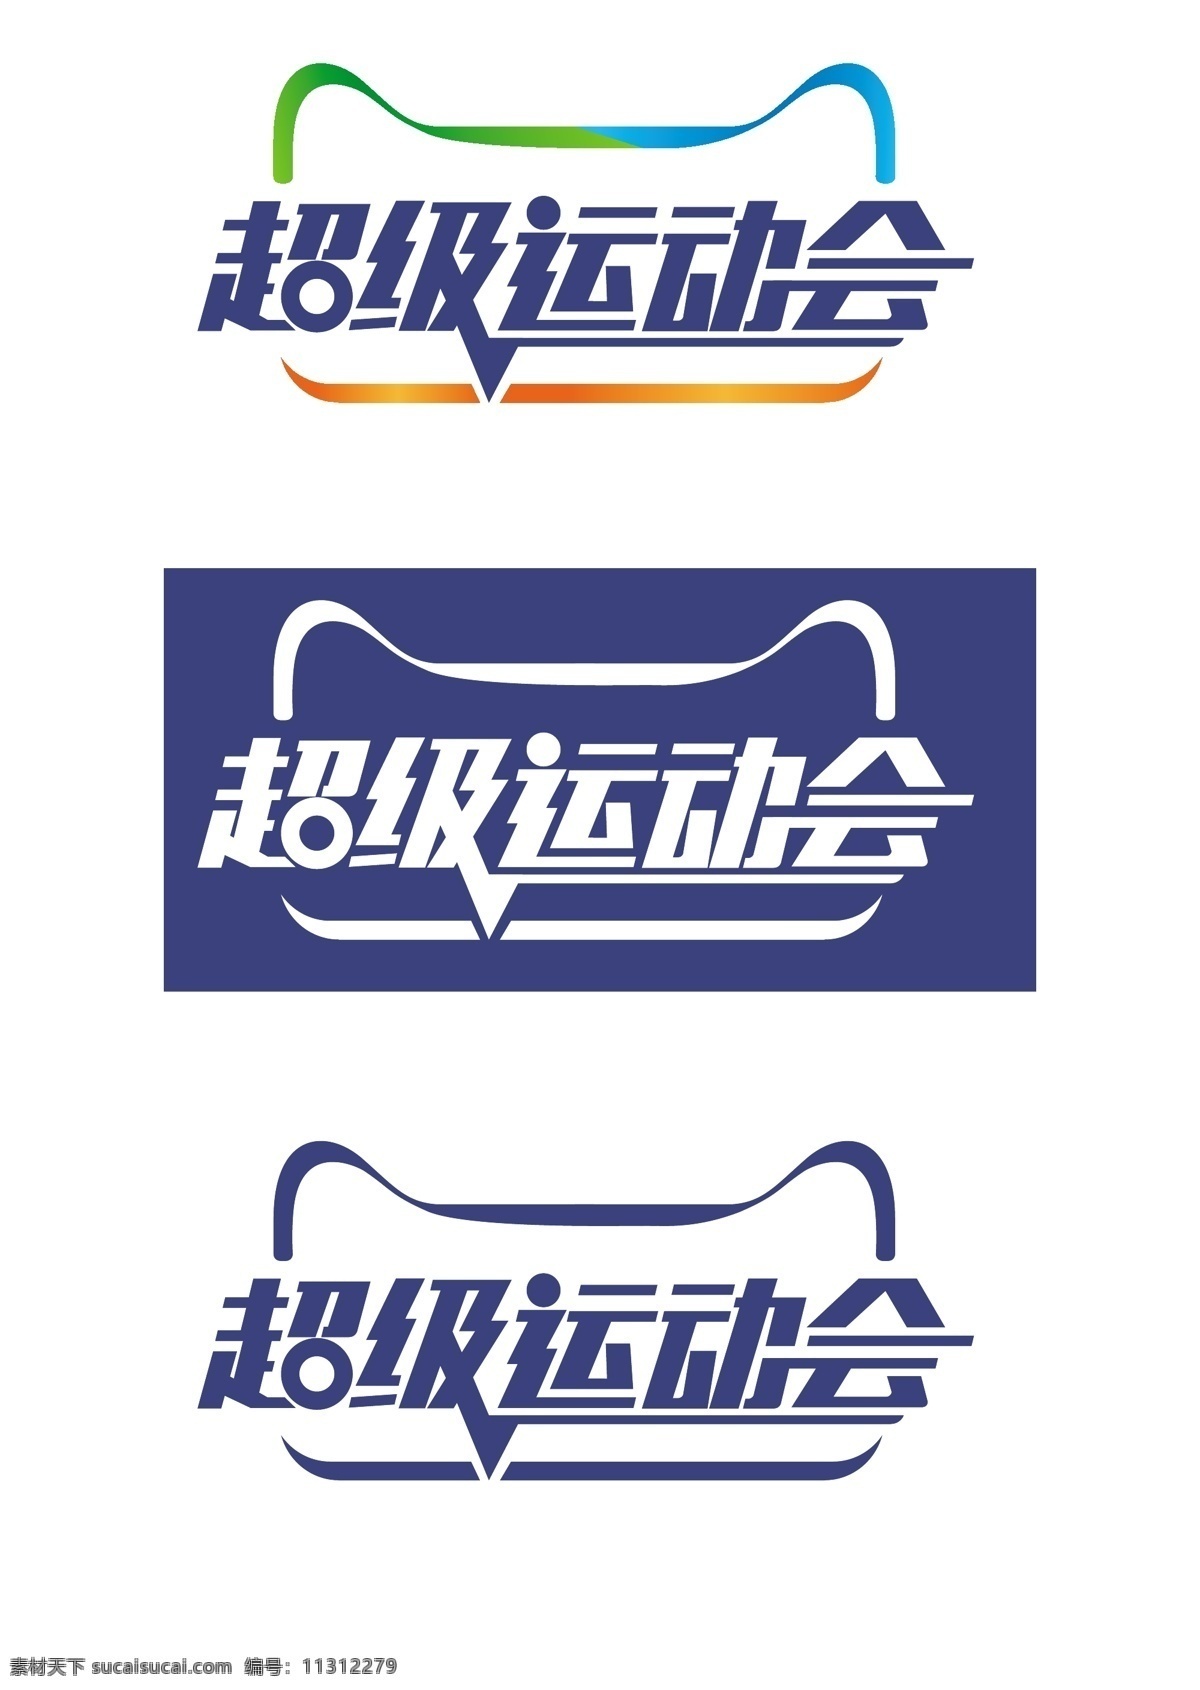 天猫 超级 运动会 超级运动会 天猫logo logo 白色